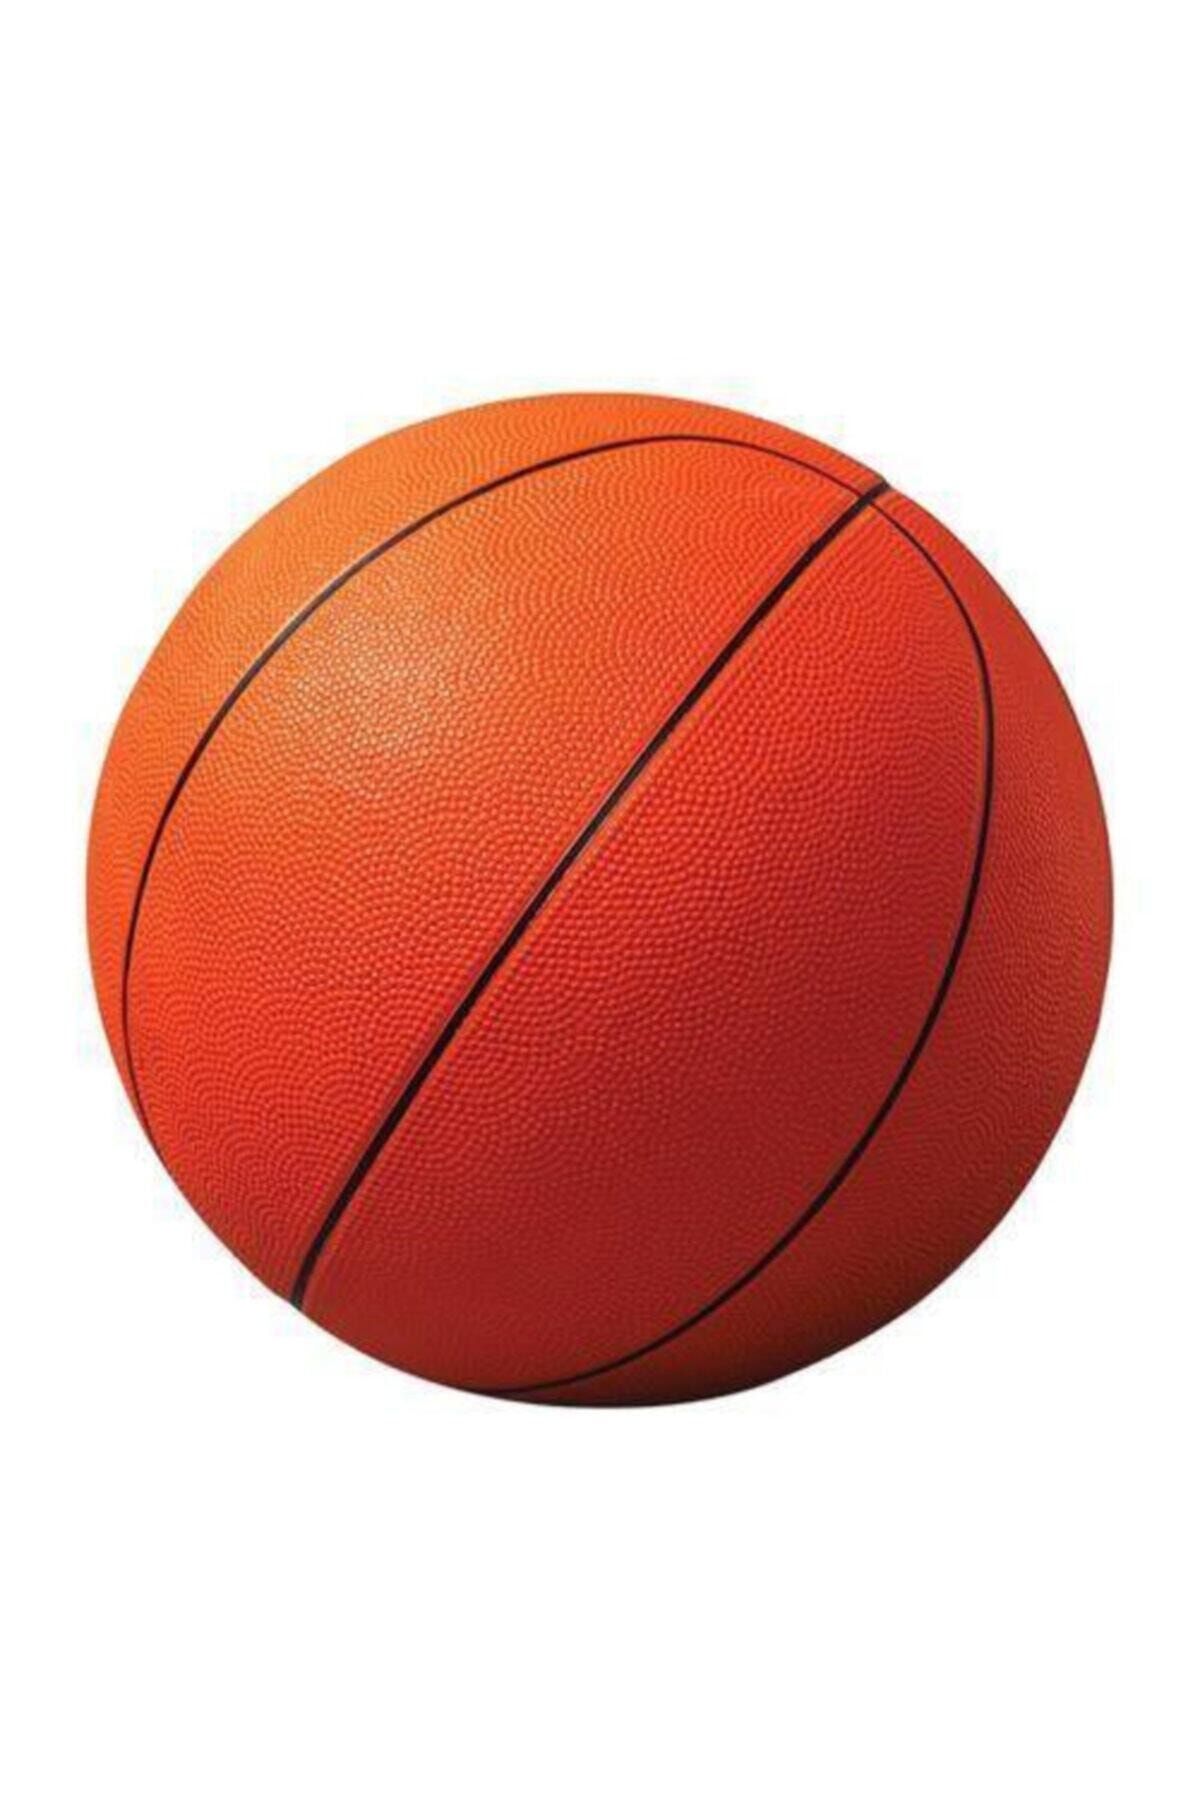 FırsatVar Basket Maçı Çocuklar Için Profesyonel Boy Kauçuk Basketbol Topu